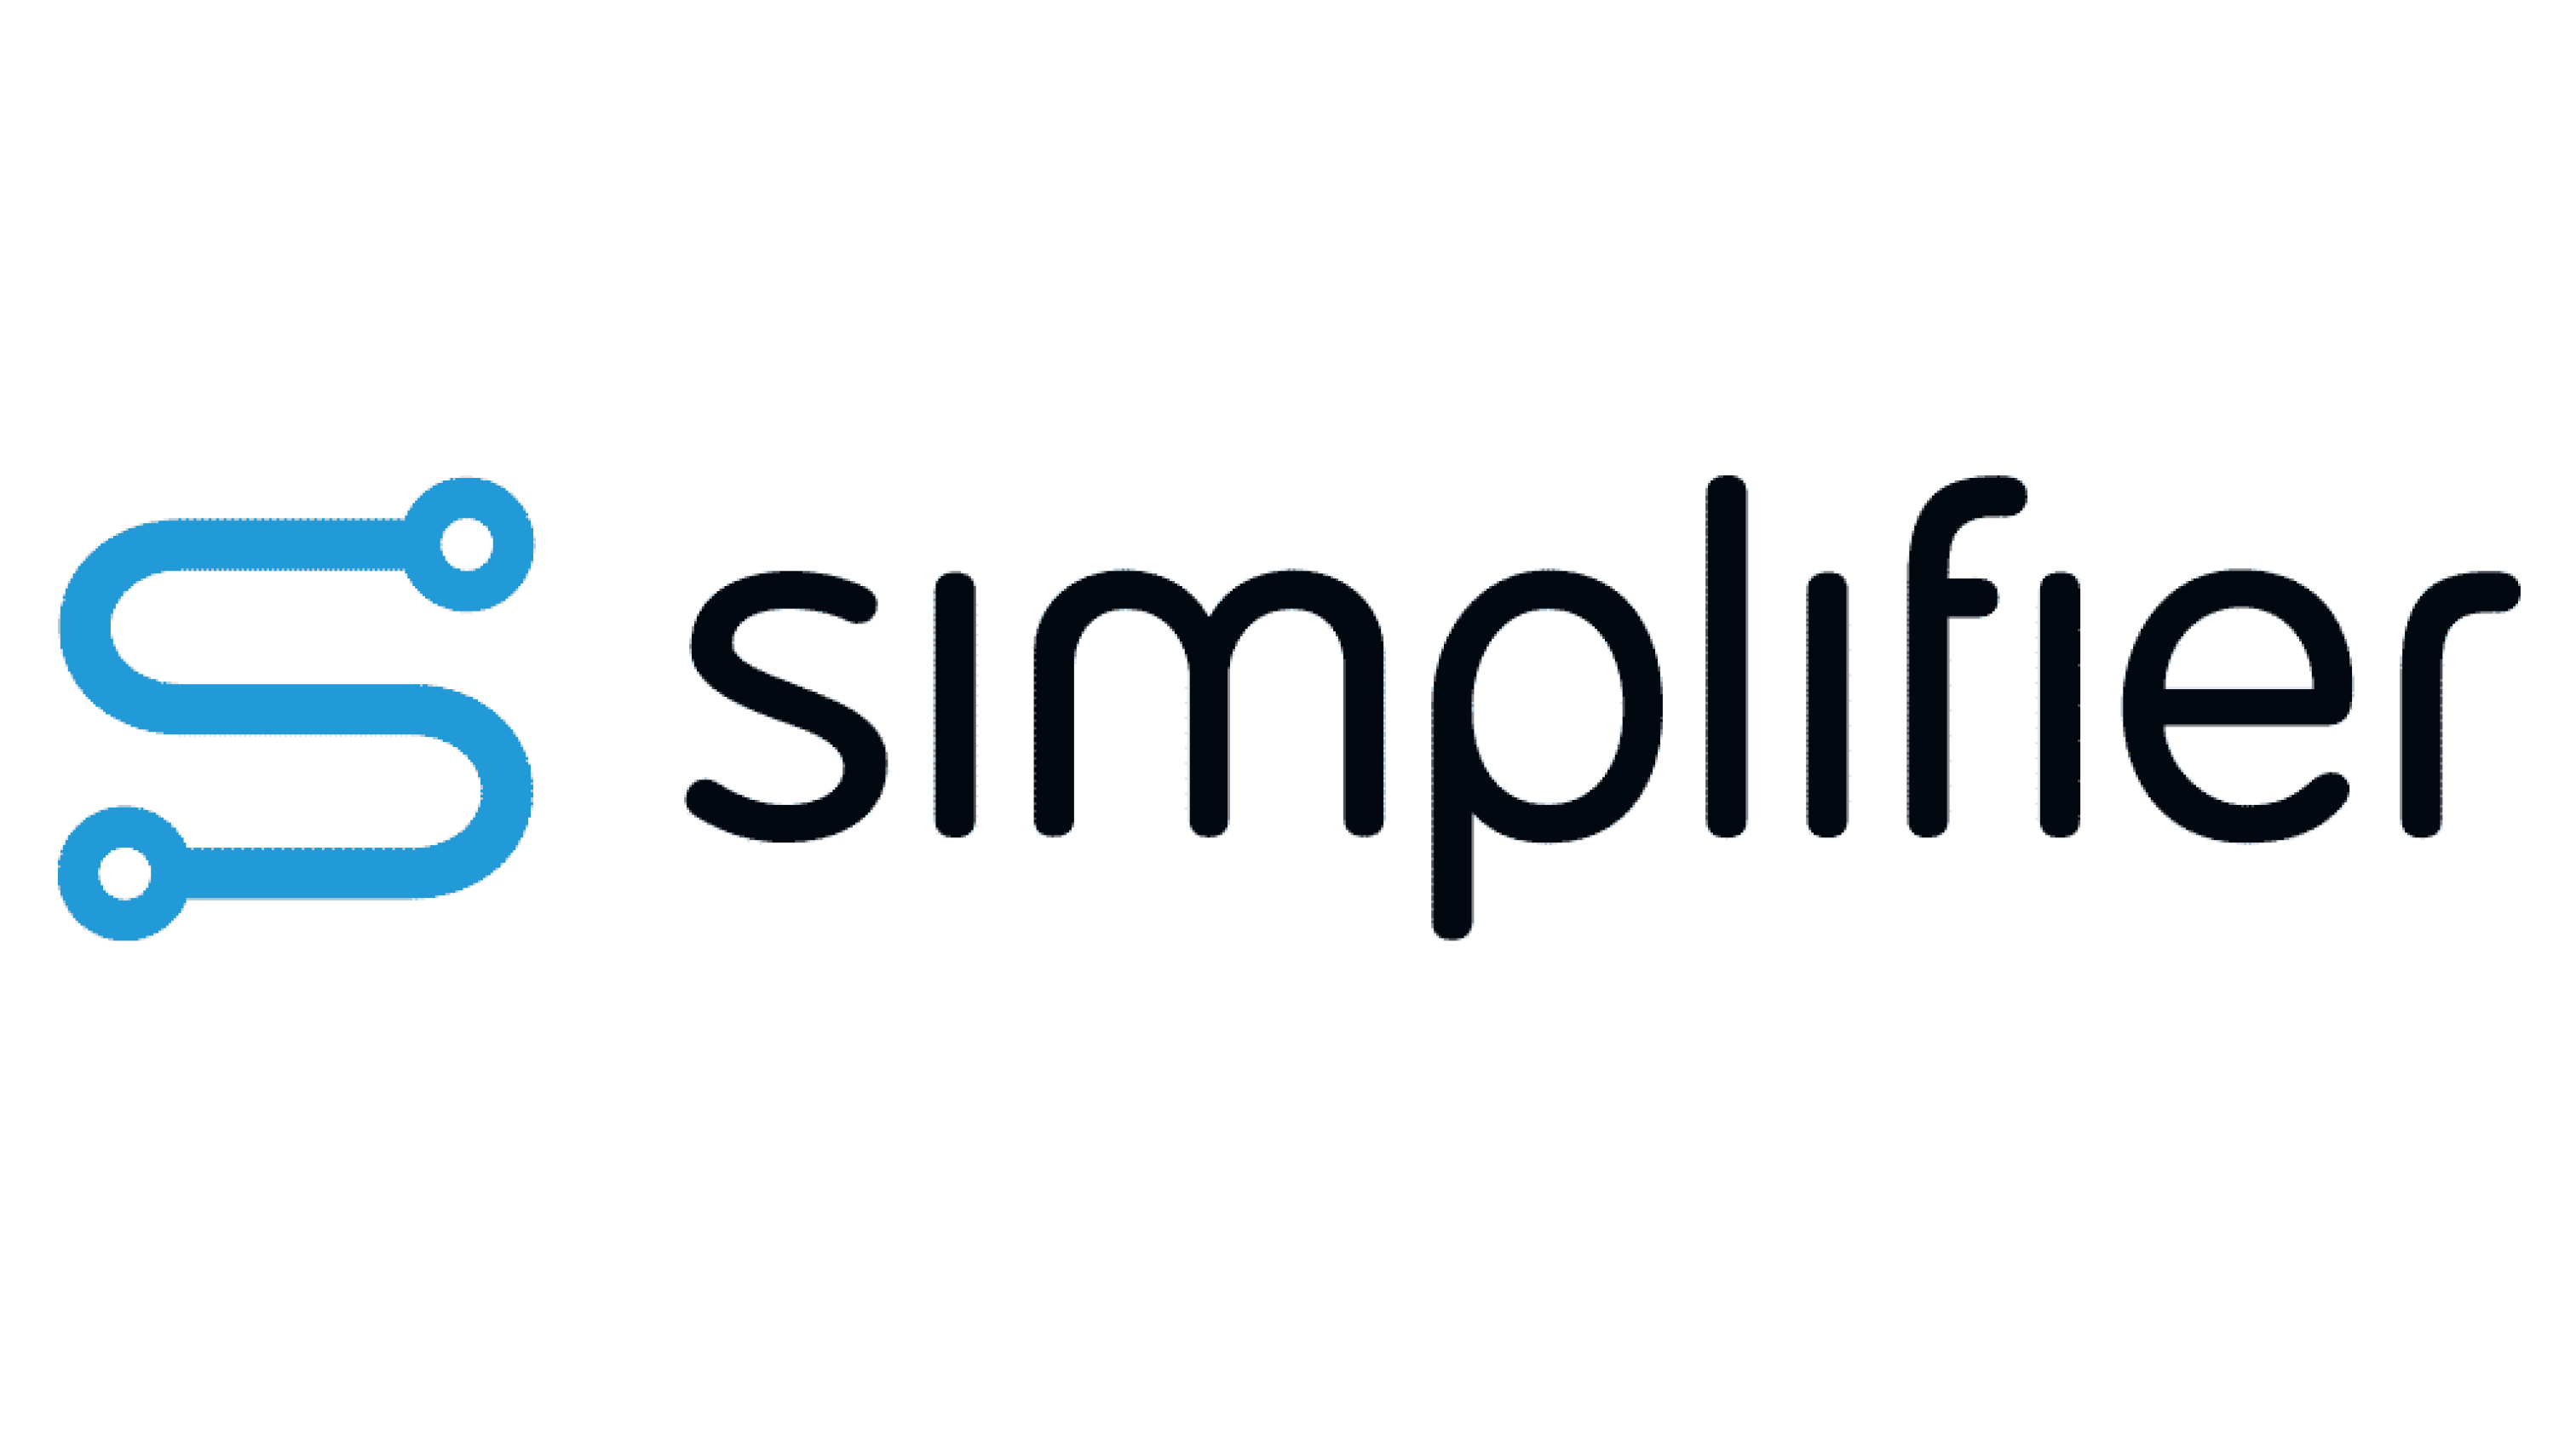 Simplifier